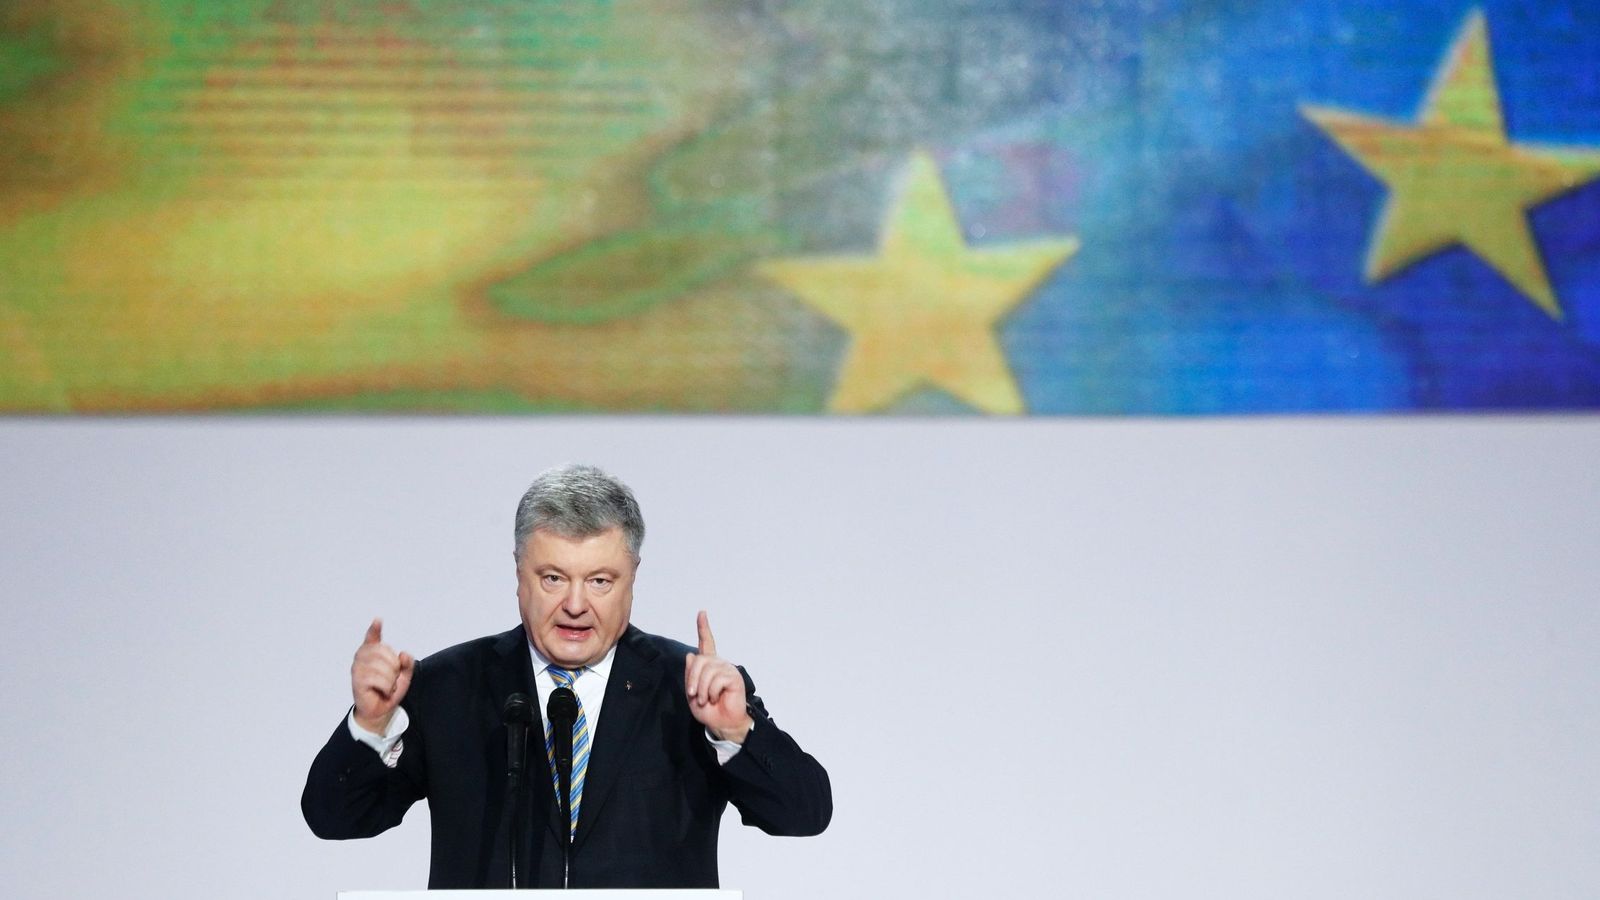 Foto: El presidente de Ucrania Petró Poroshenko anuncia su candidatura a la reelección en Kiev, el 29 de enero de 2019. (EFE)